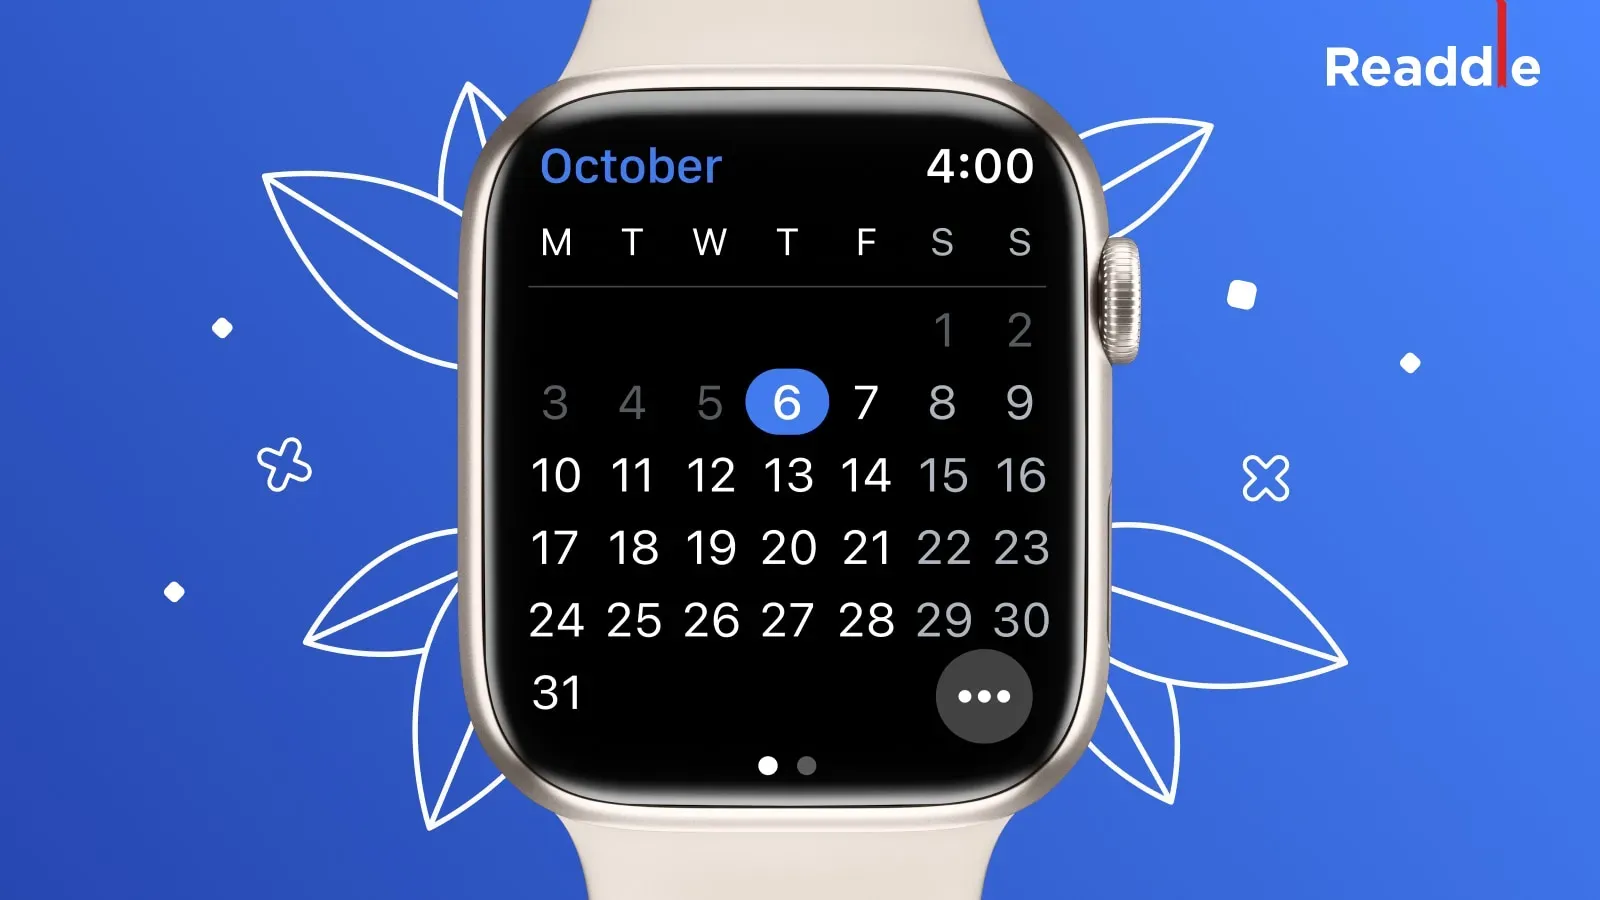 Przeglądanie widoku miesiąca Czytelne kalendarze dla Apple Watch